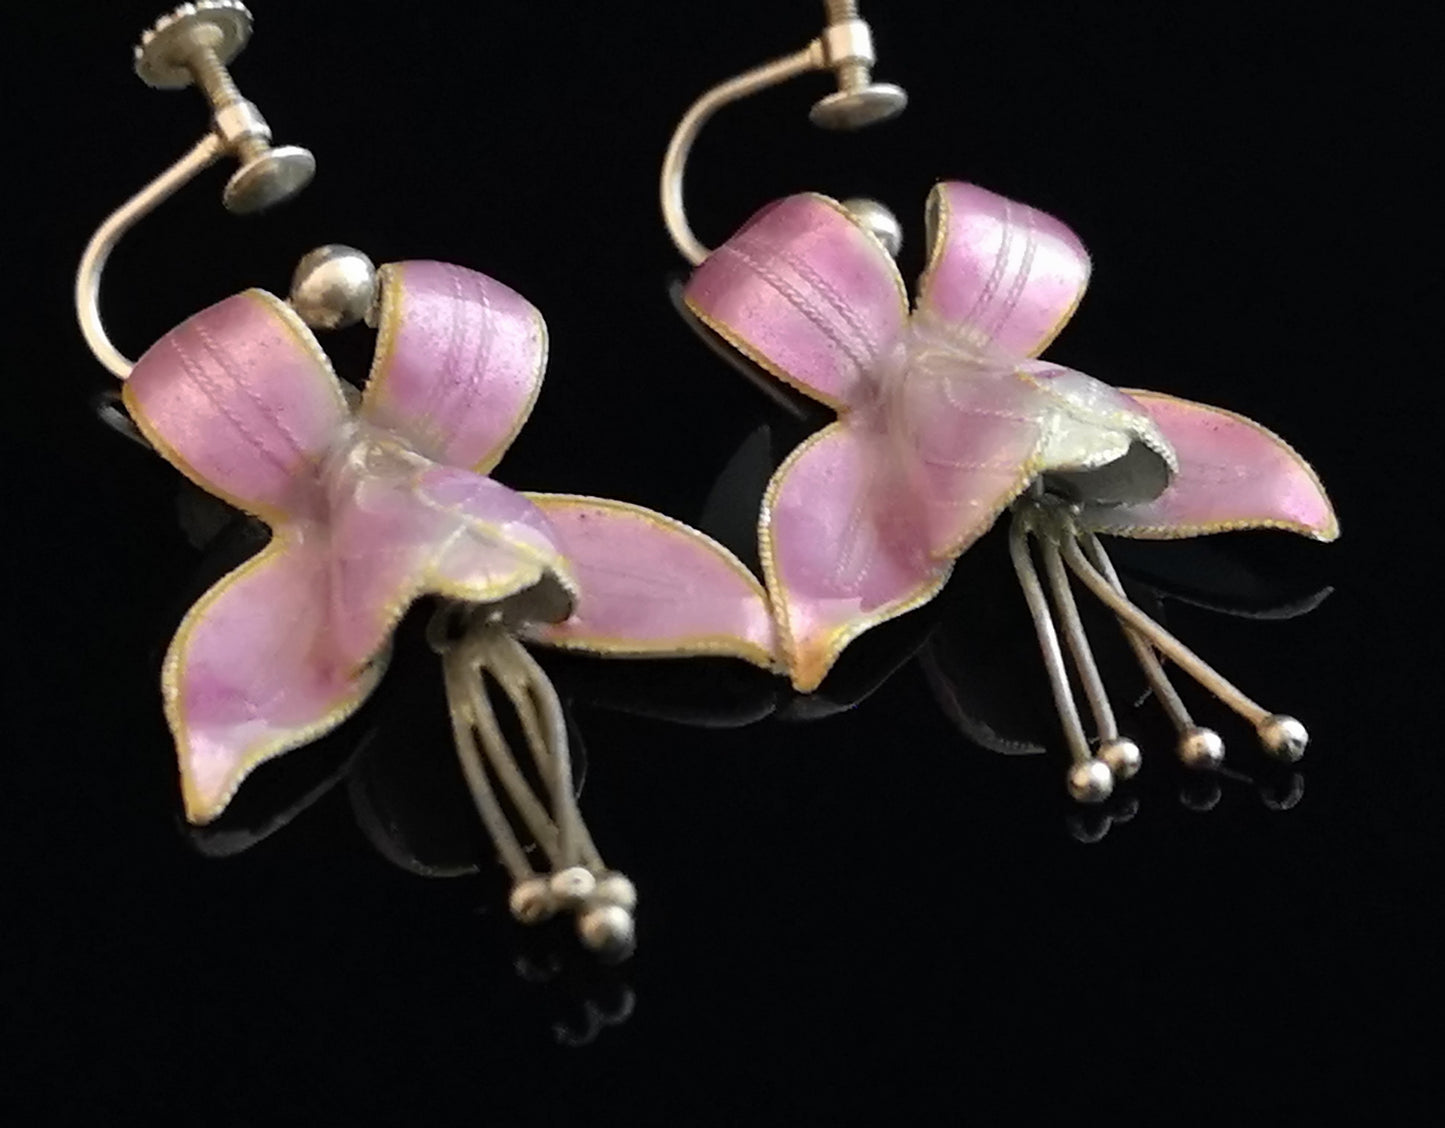 Antique Art Nouveau flower earrings